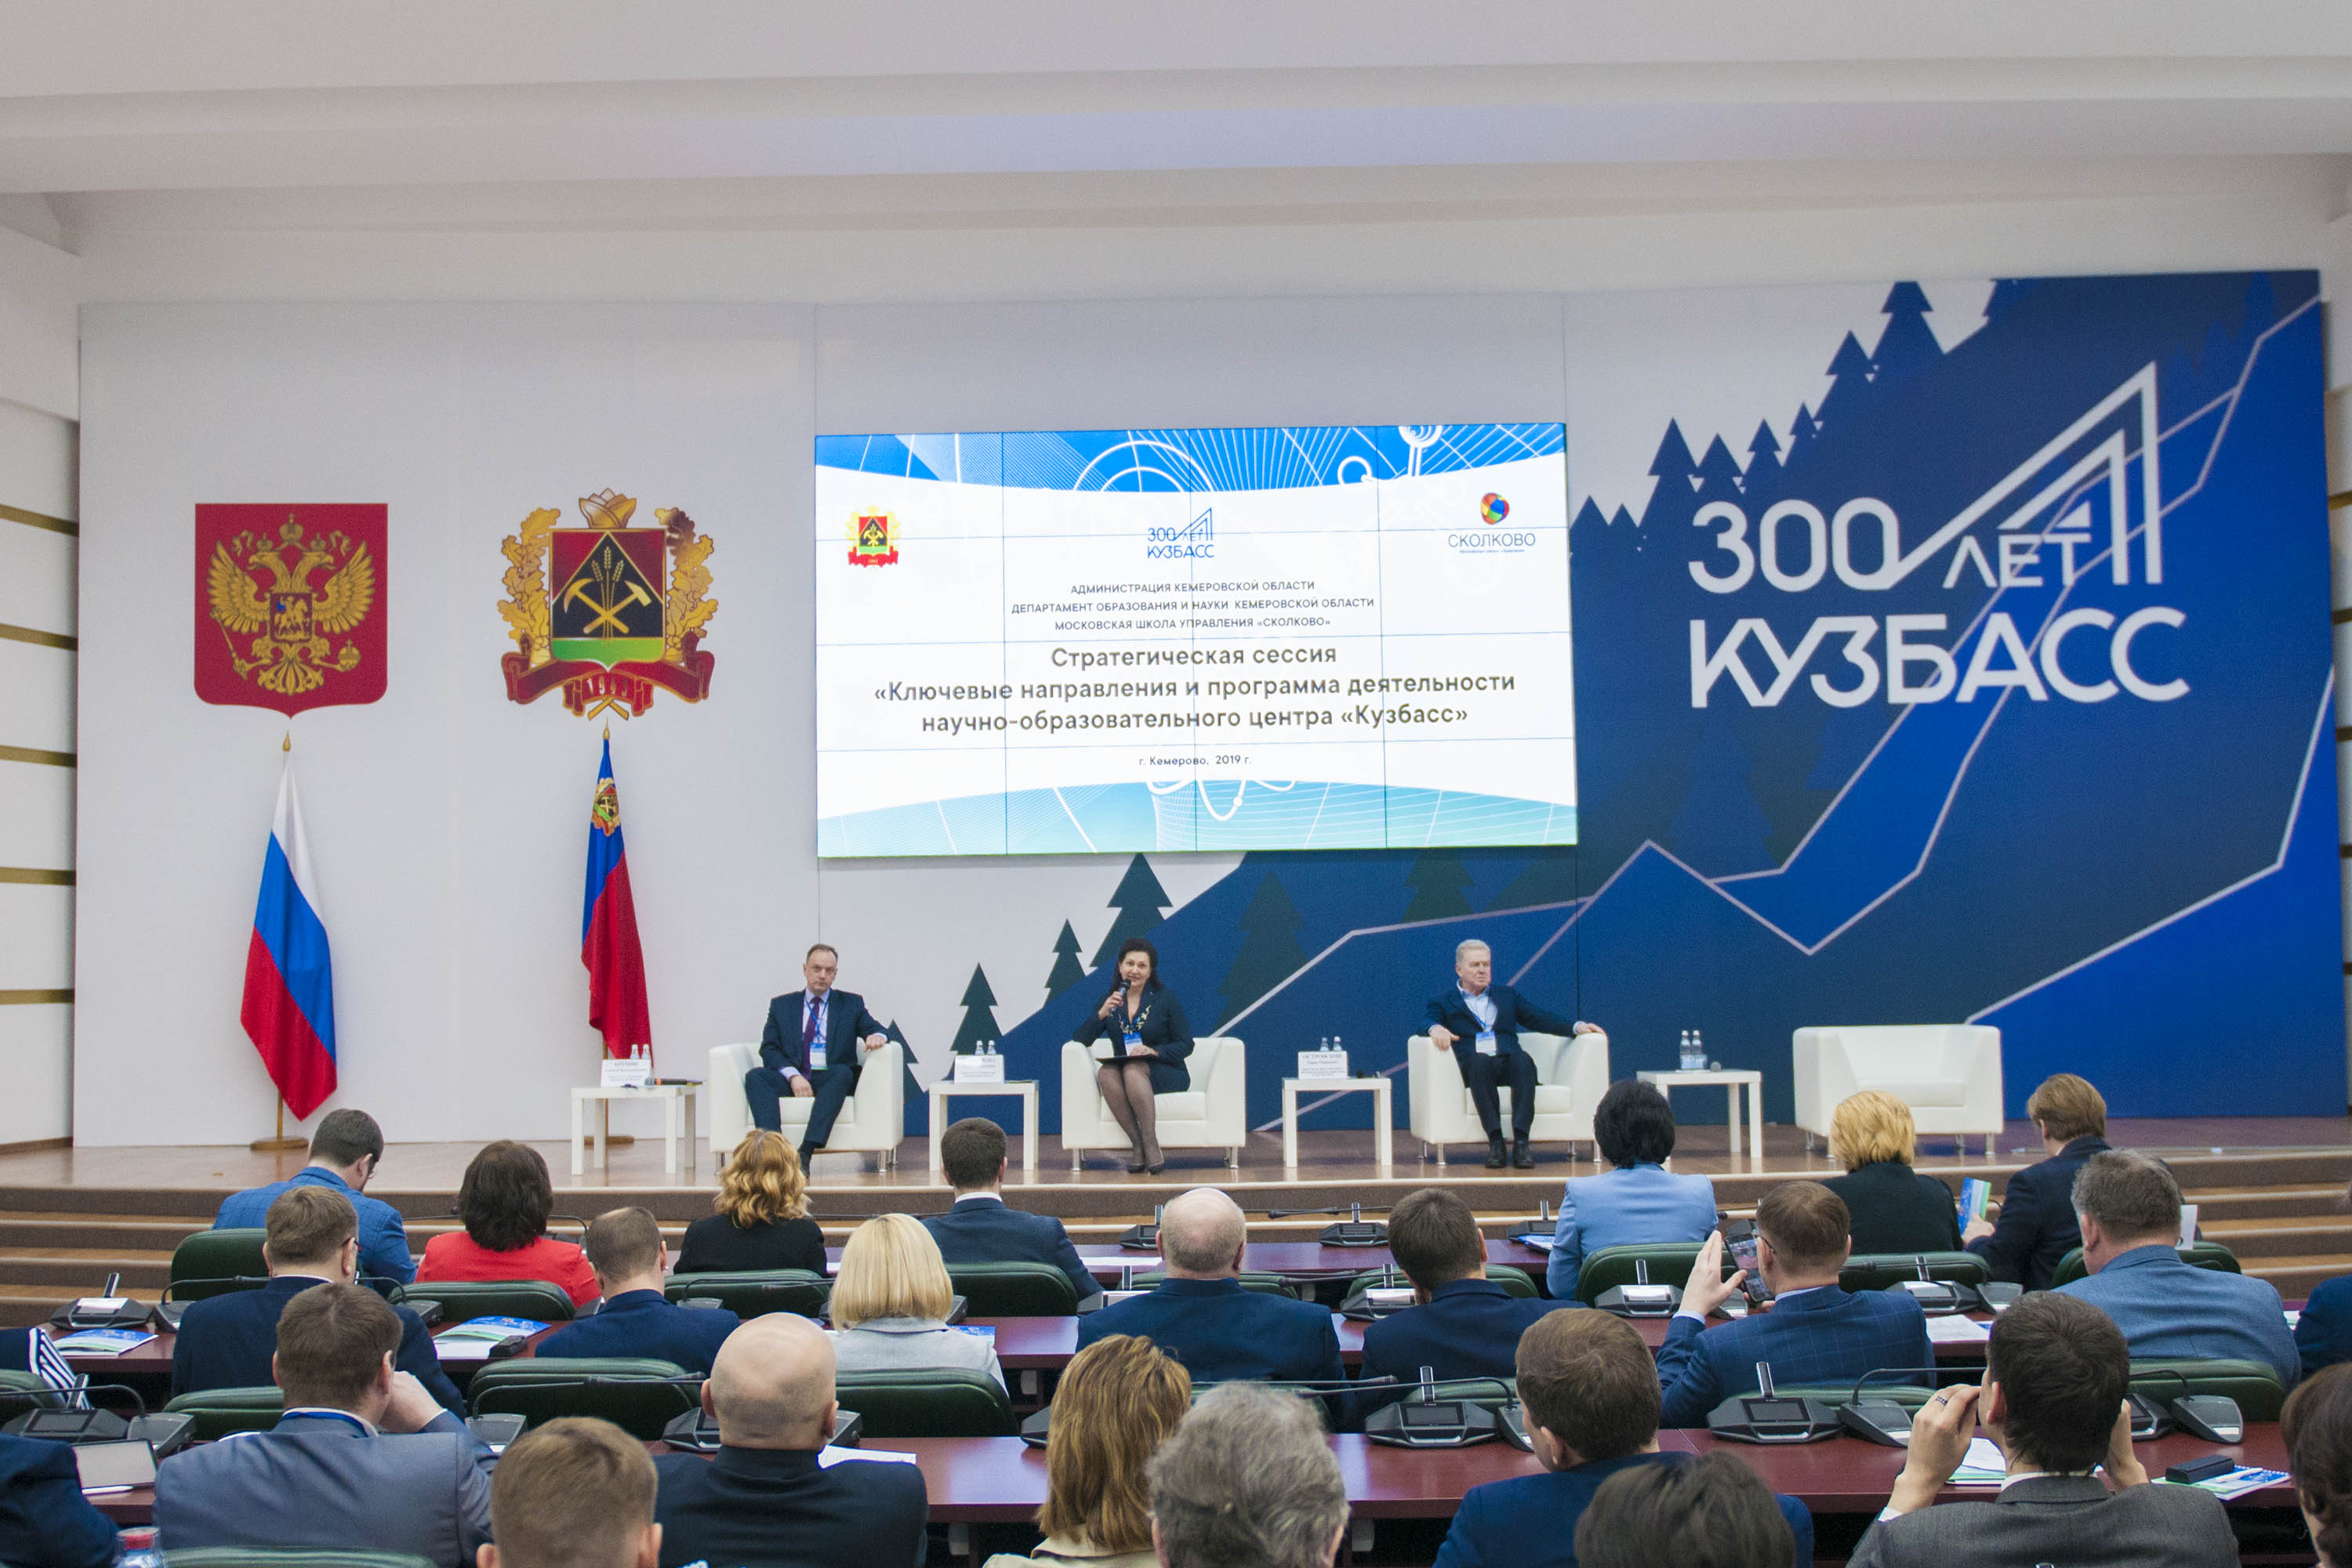 Стратегическая сессия по разработке ключевых направлений и программы деятельности НОЦ "Кузбасс" открылась в Кемерове 